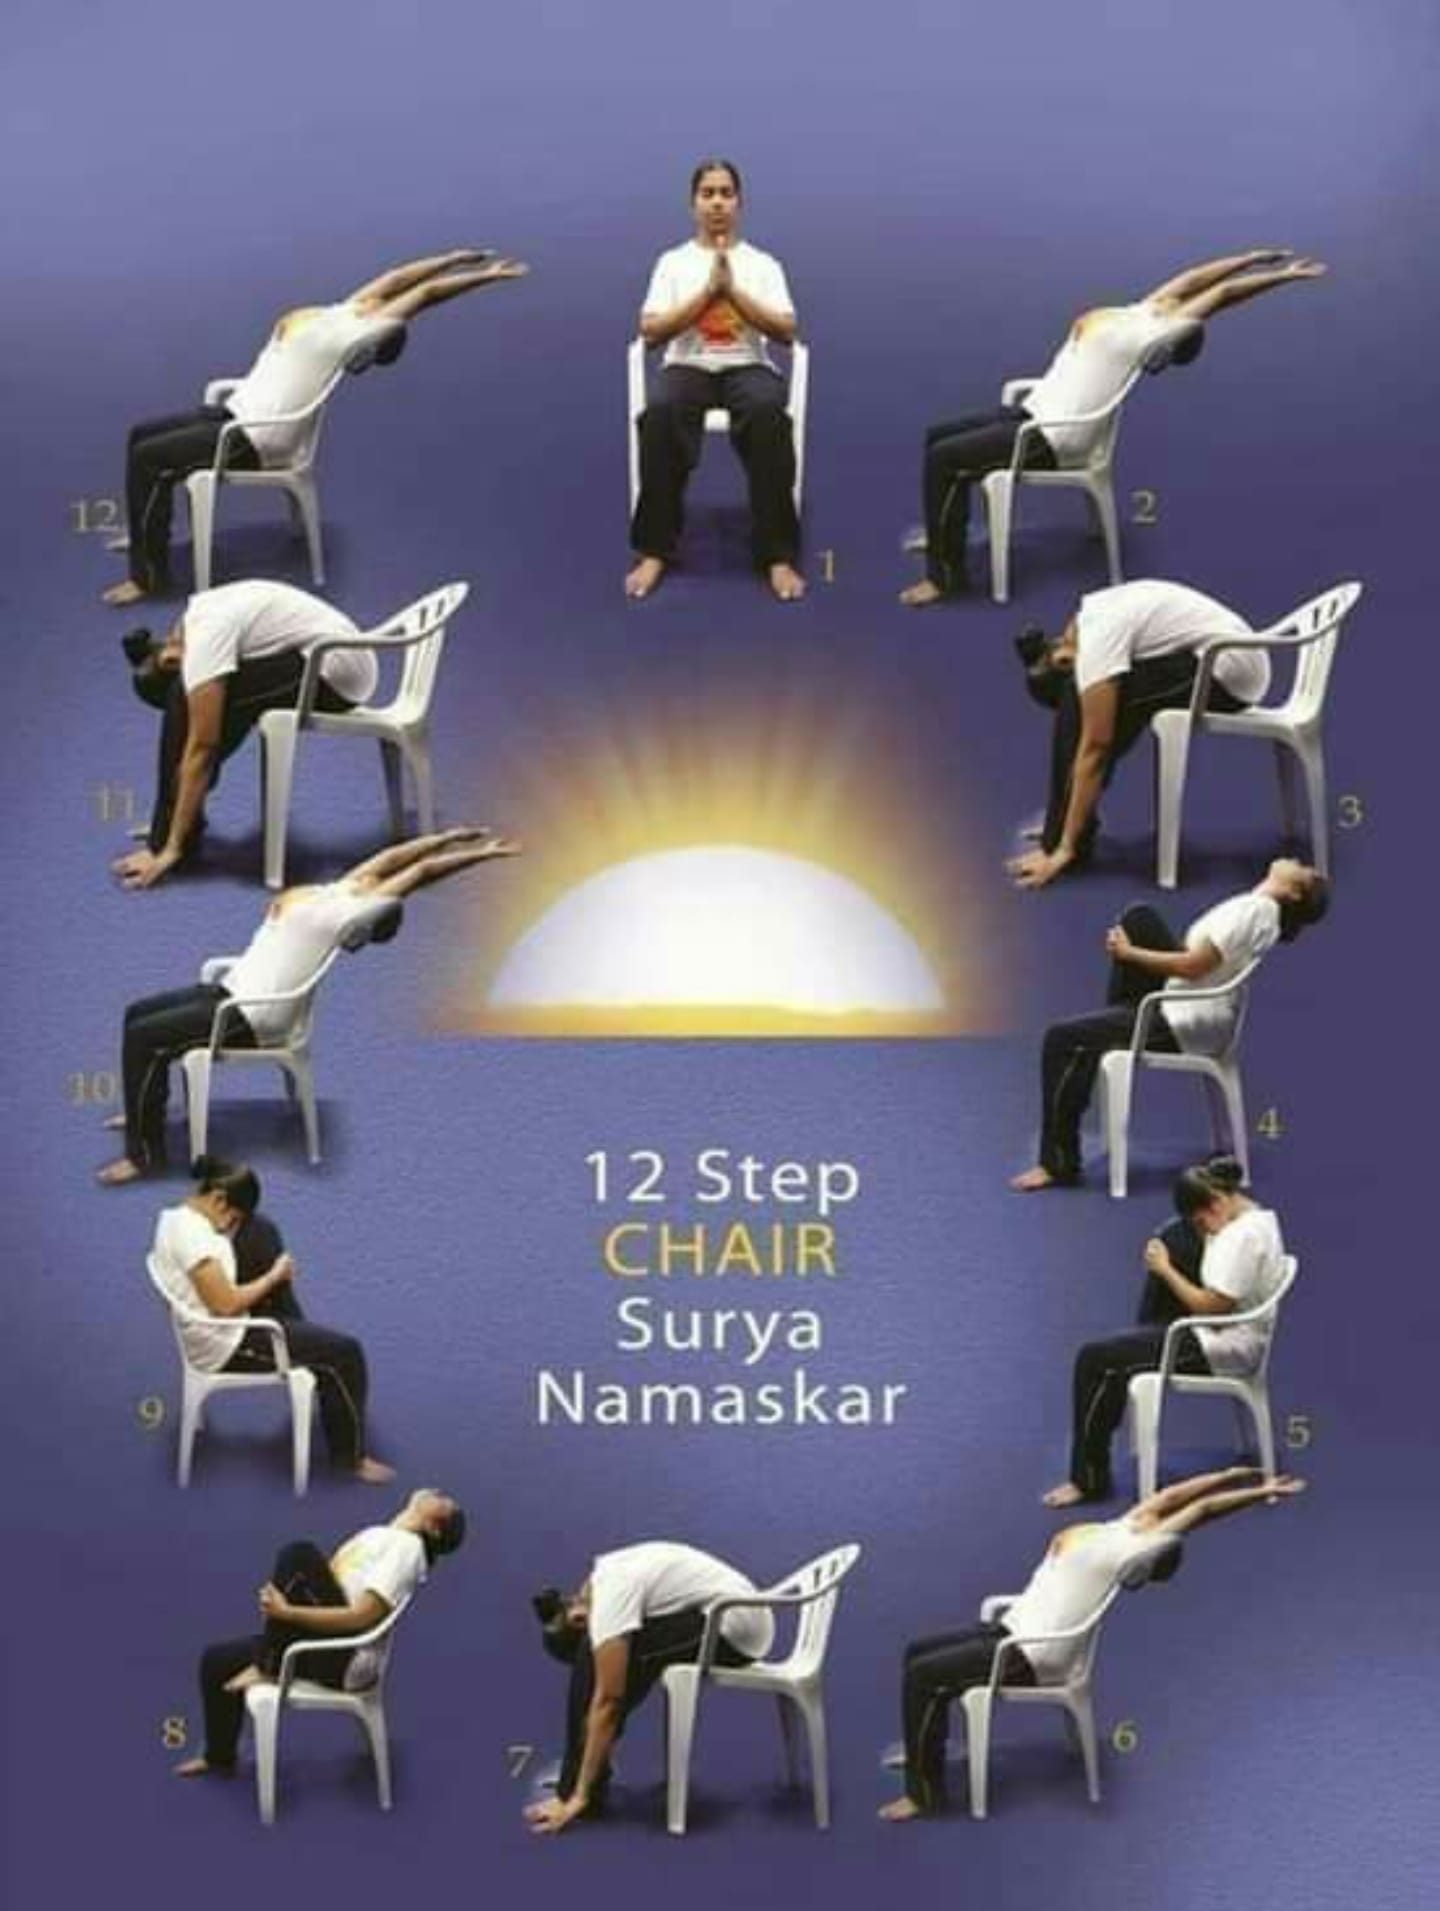 Chair Surya Namaskar Step By Step Guide | HerZindagi